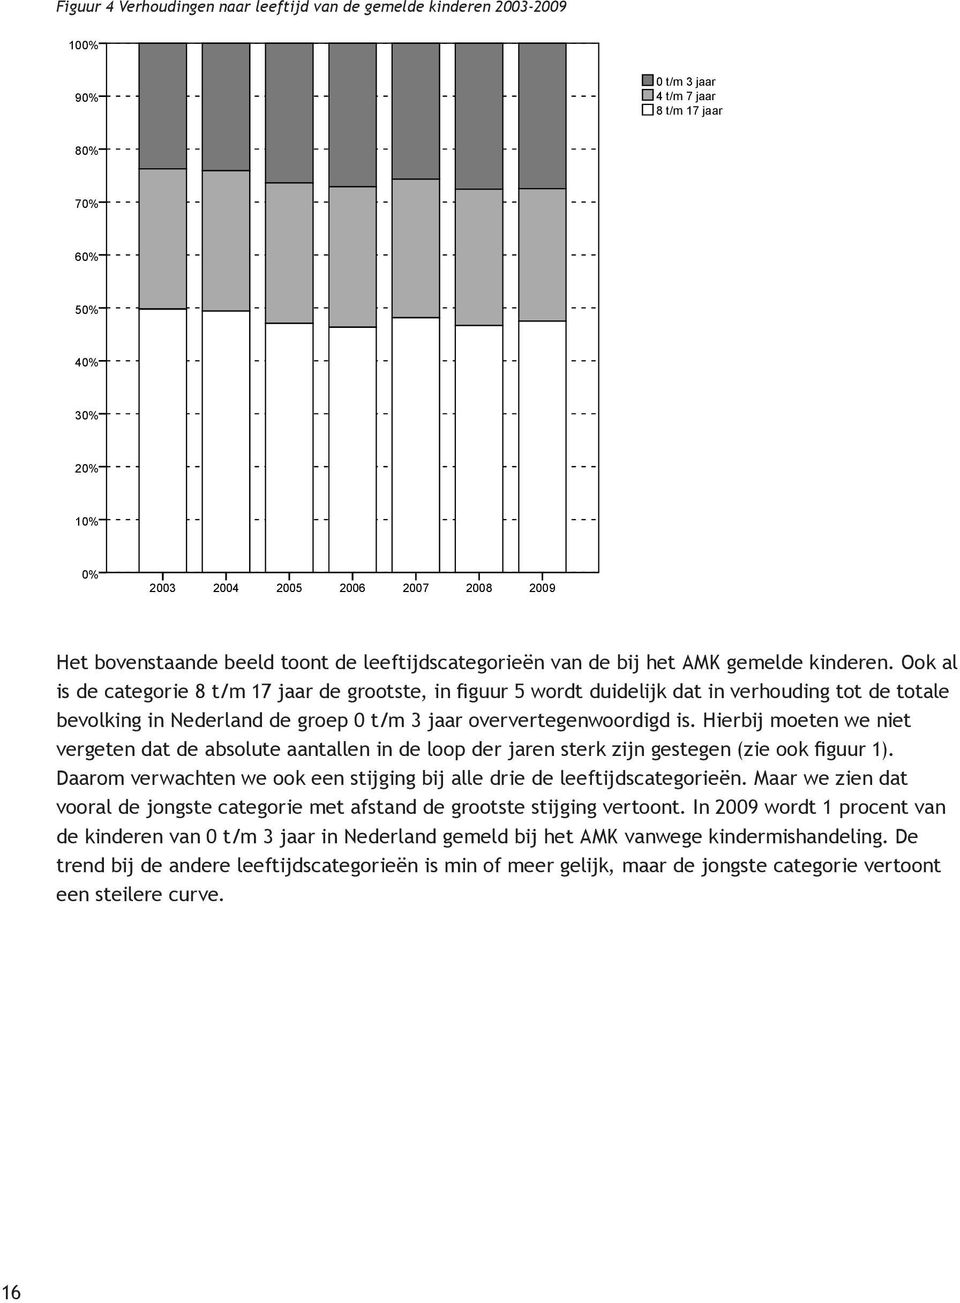 Ook al is de categorie 8 t/m 17 jaar de grootste, in figuur 5 wordt duidelijk dat in verhouding tot de totale bevolking in Nederland de groep 0 t/m 3 jaar oververtegenwoordigd is.